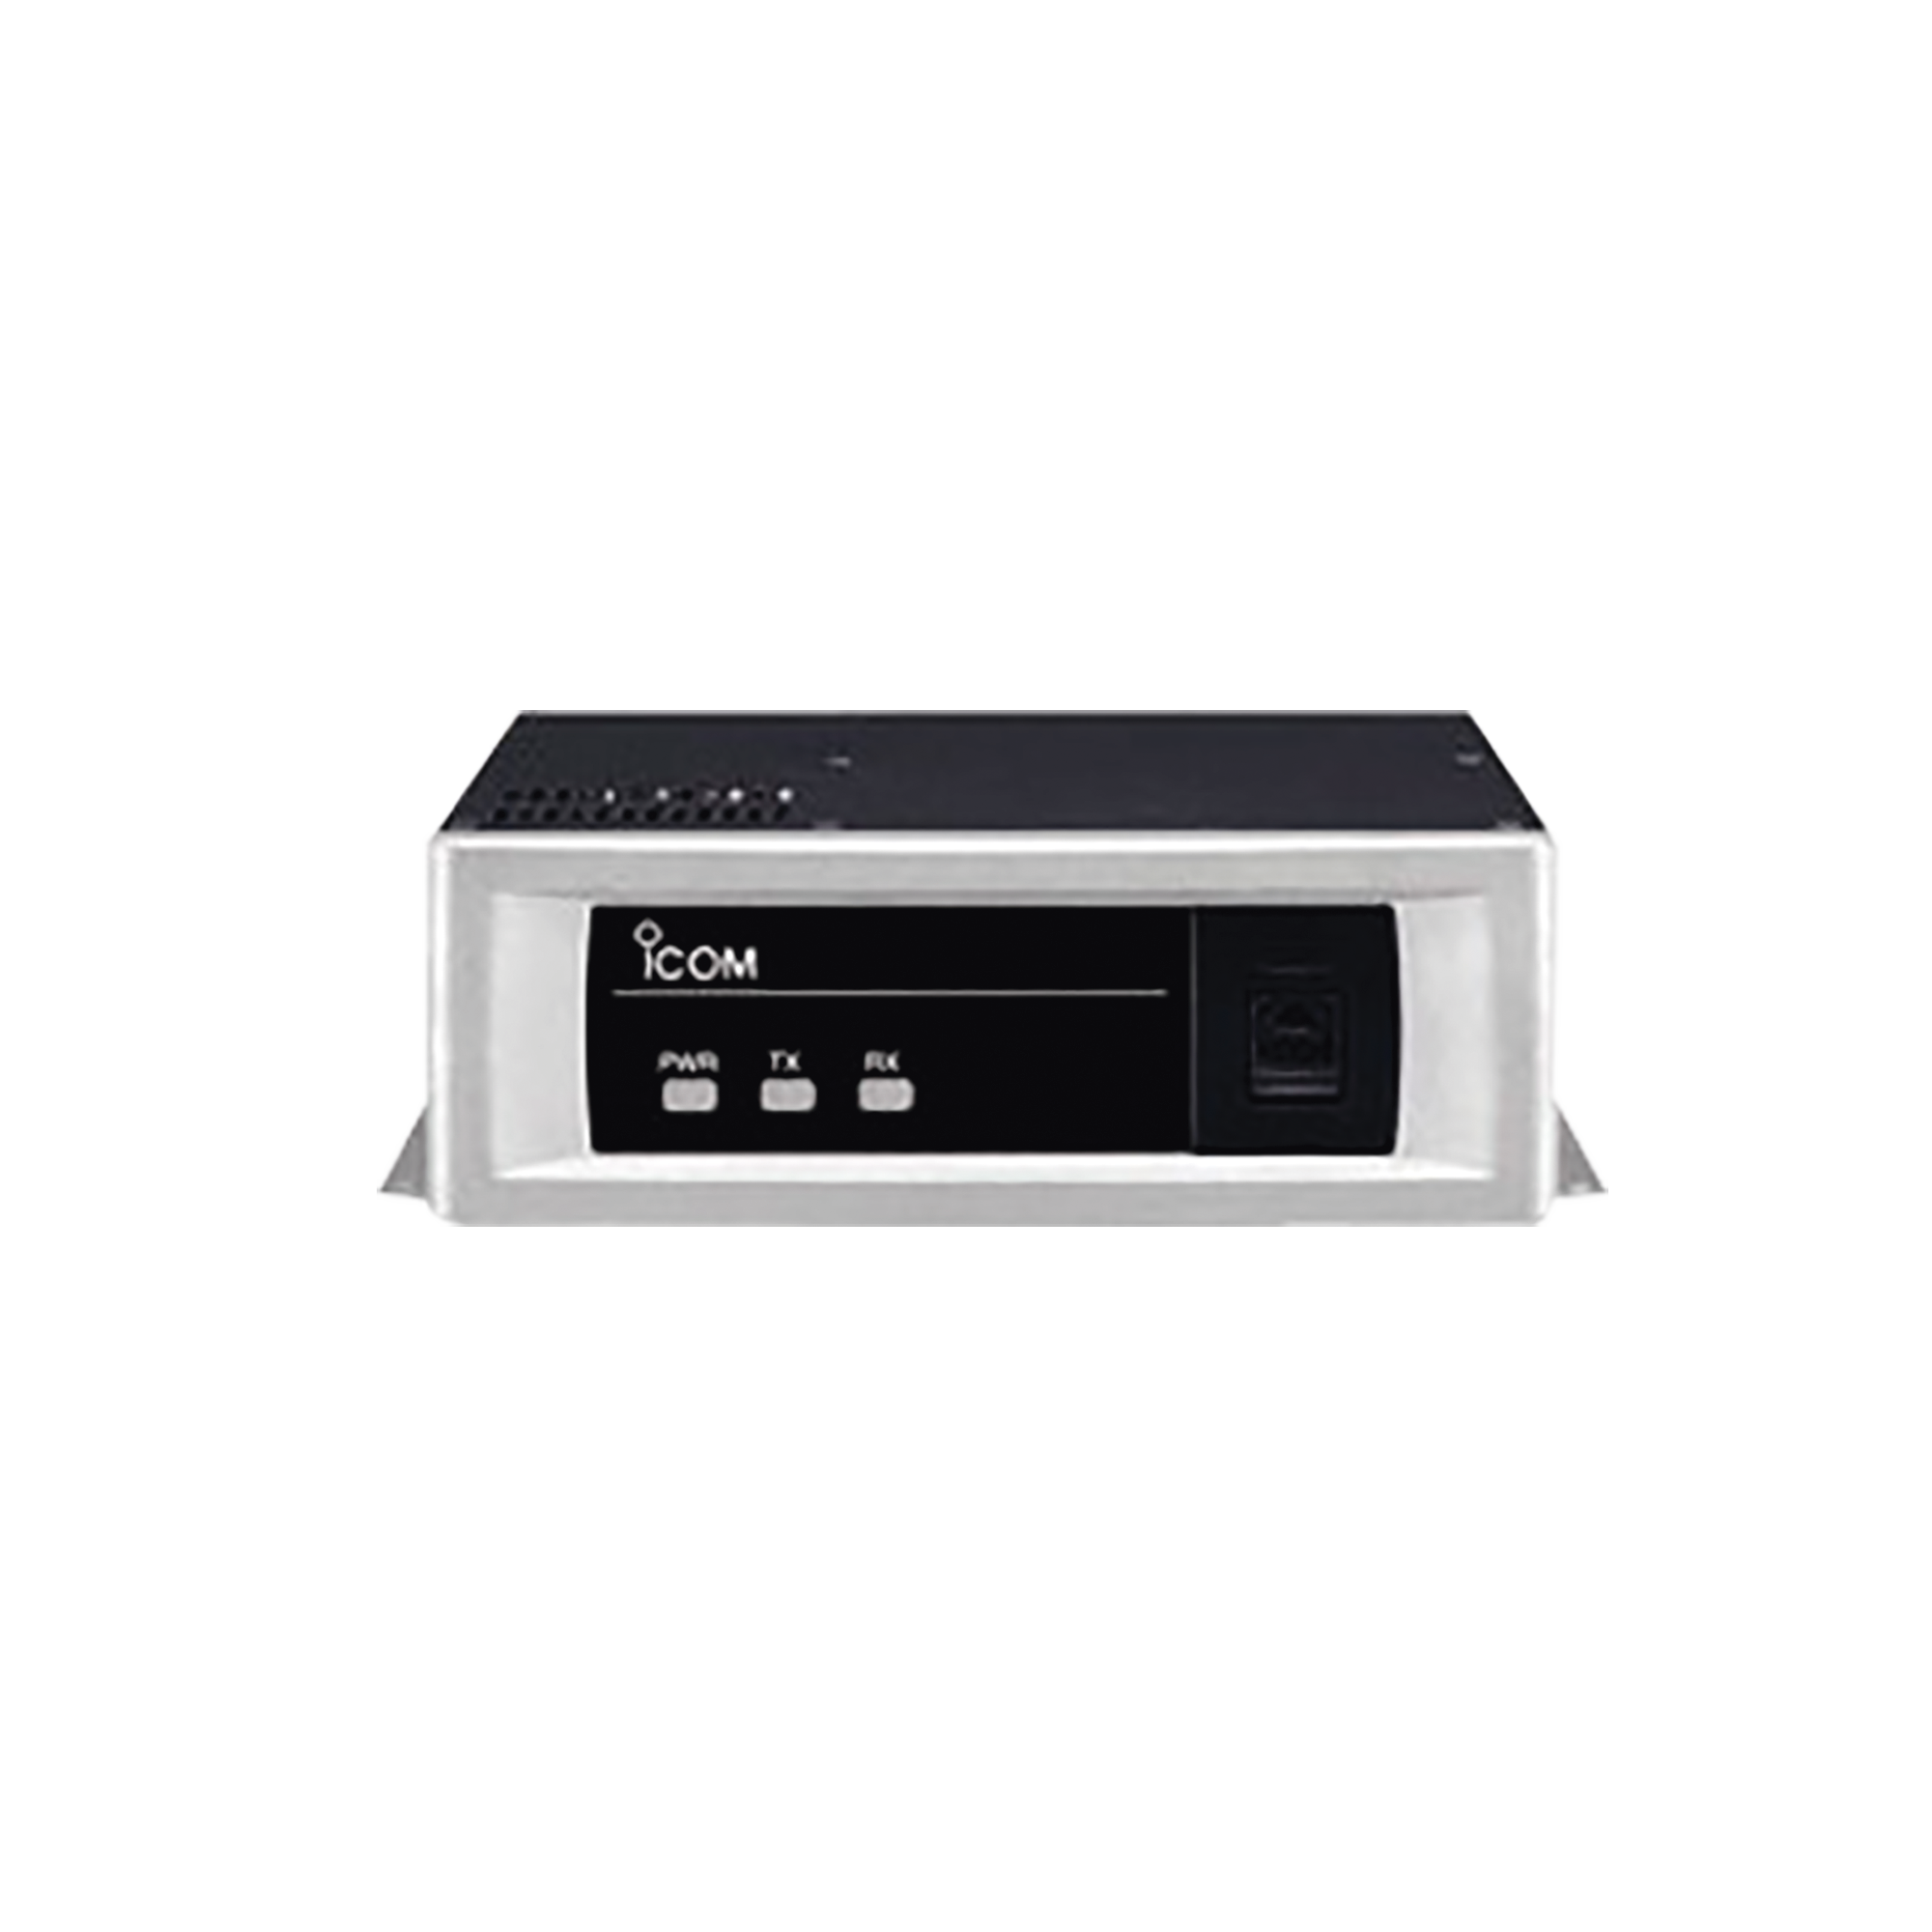 Repetidor  compacto NXDN/Analógico, con opción a Sistema Simulcast, Trunking y Multi sitio. UHF, 400-470 MHz, 25-50 Watts, 16 grupos, 30 canales.